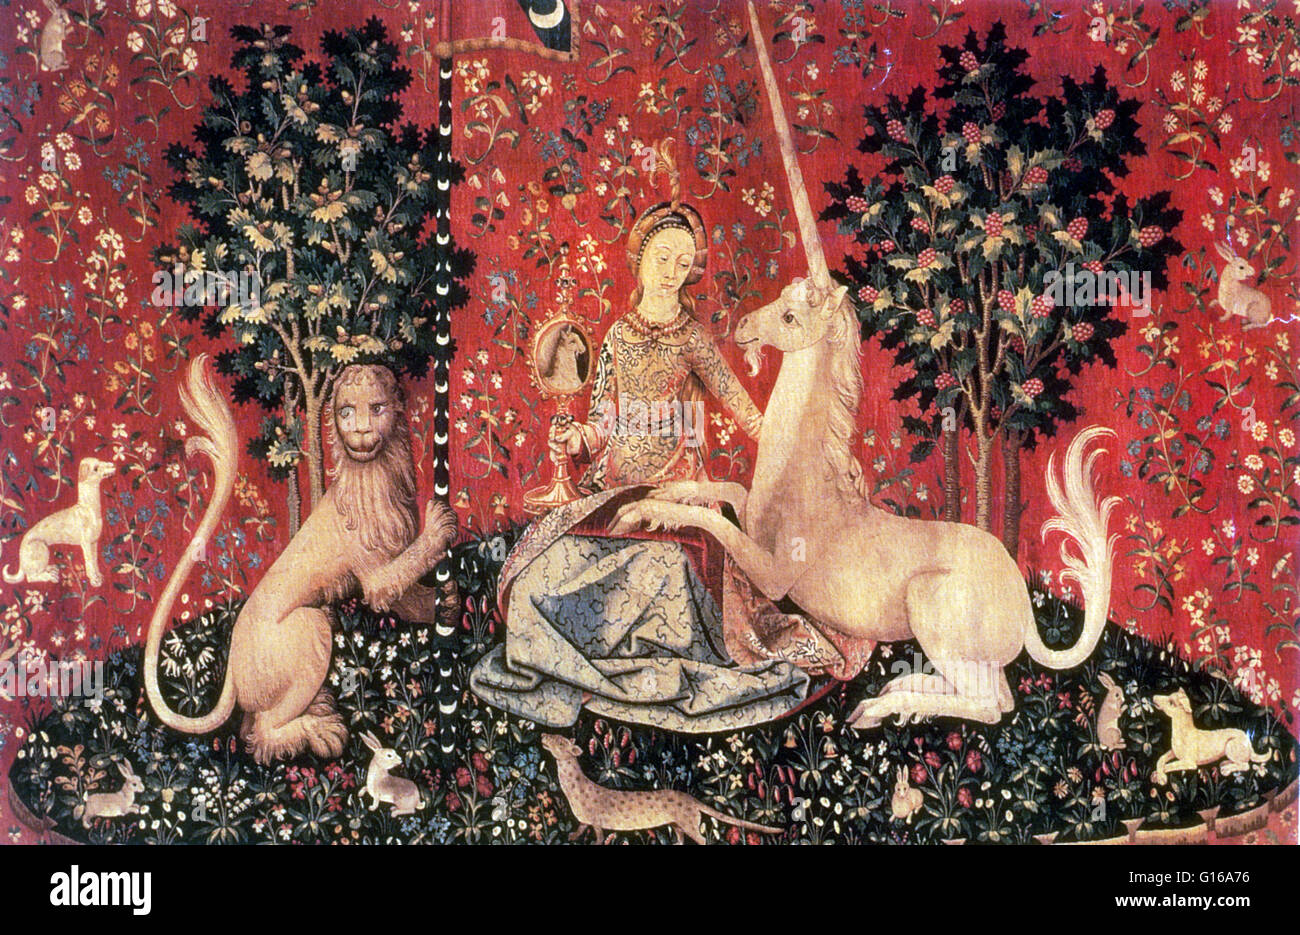 La signora e il bufalo è il moderno titolo dato a una serie di sei arazzi nelle Fiandre di lana e seta da disegni disegnati a Parigi alla fine del XV secolo e sono considerati una delle più grandi opere d'arte del Medioevo in Europa Foto Stock